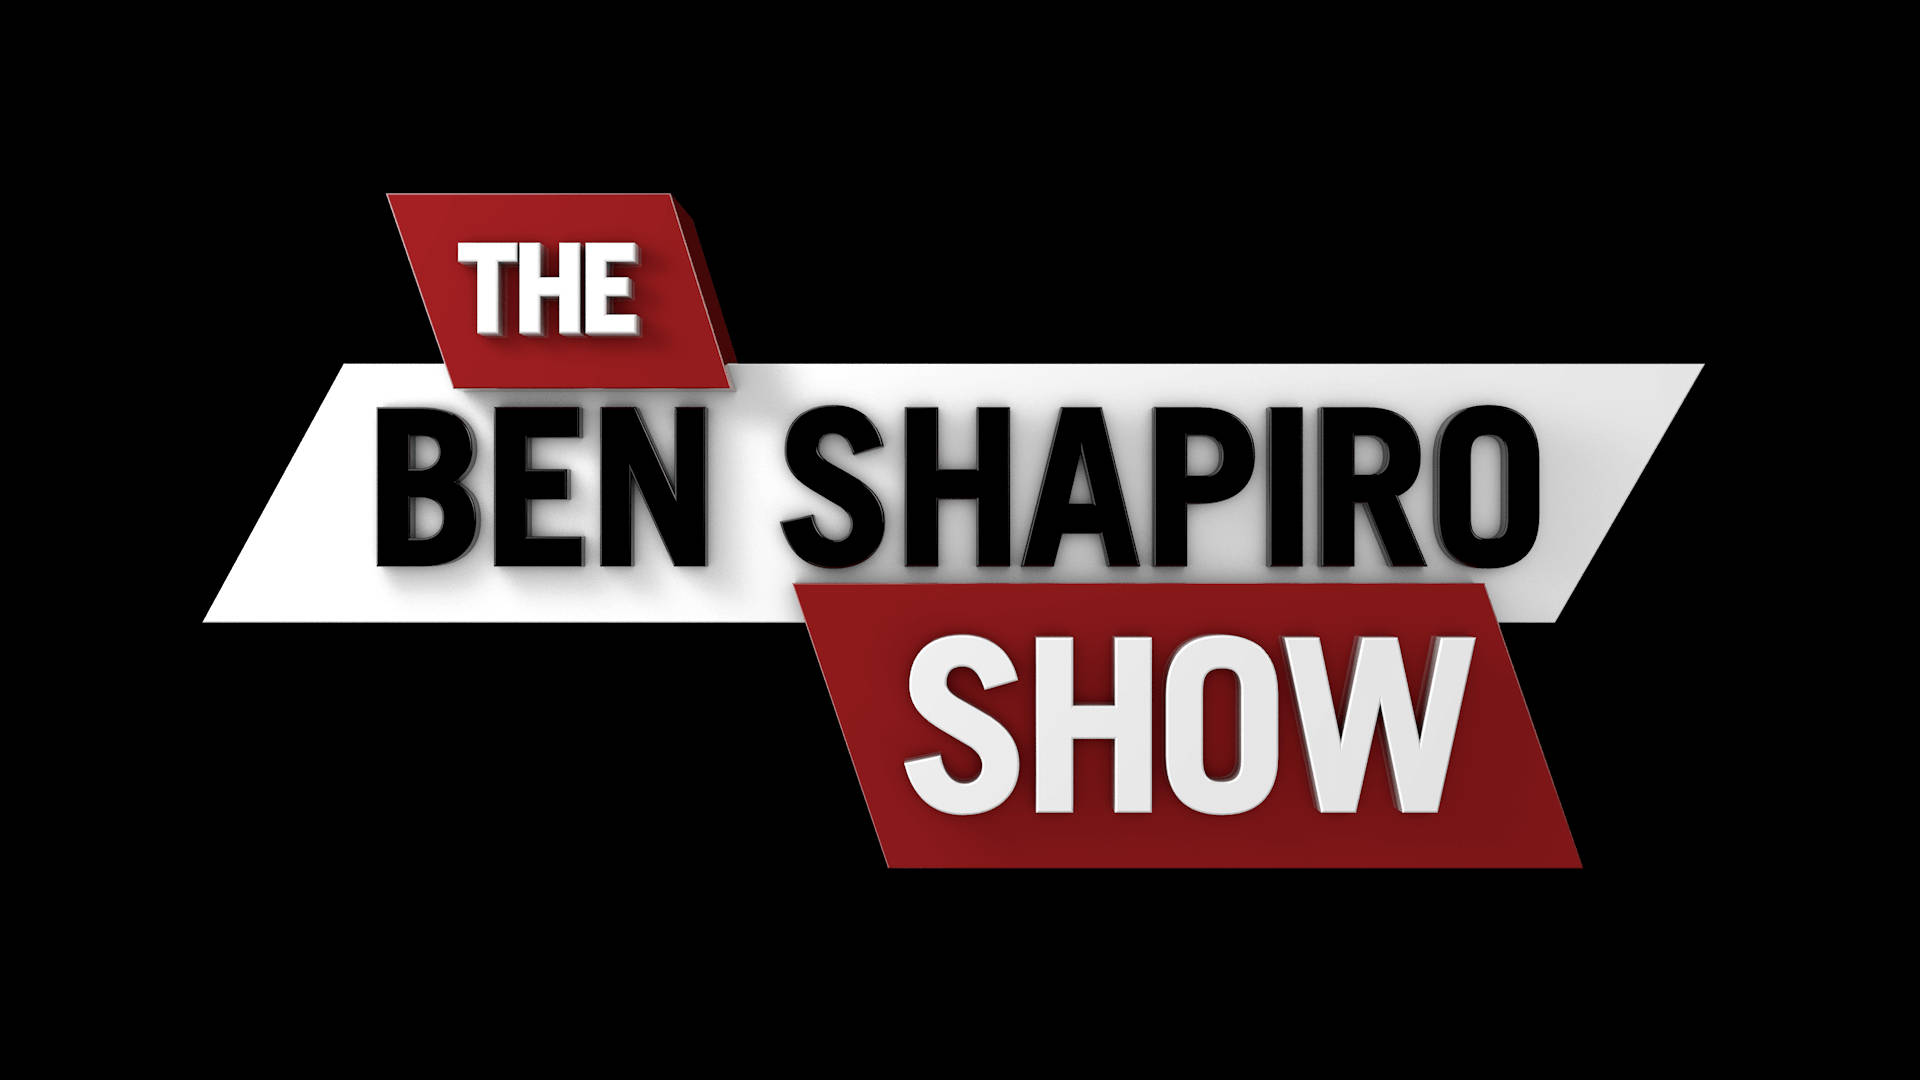 Denben Shapiro Show-logotypen. Wallpaper